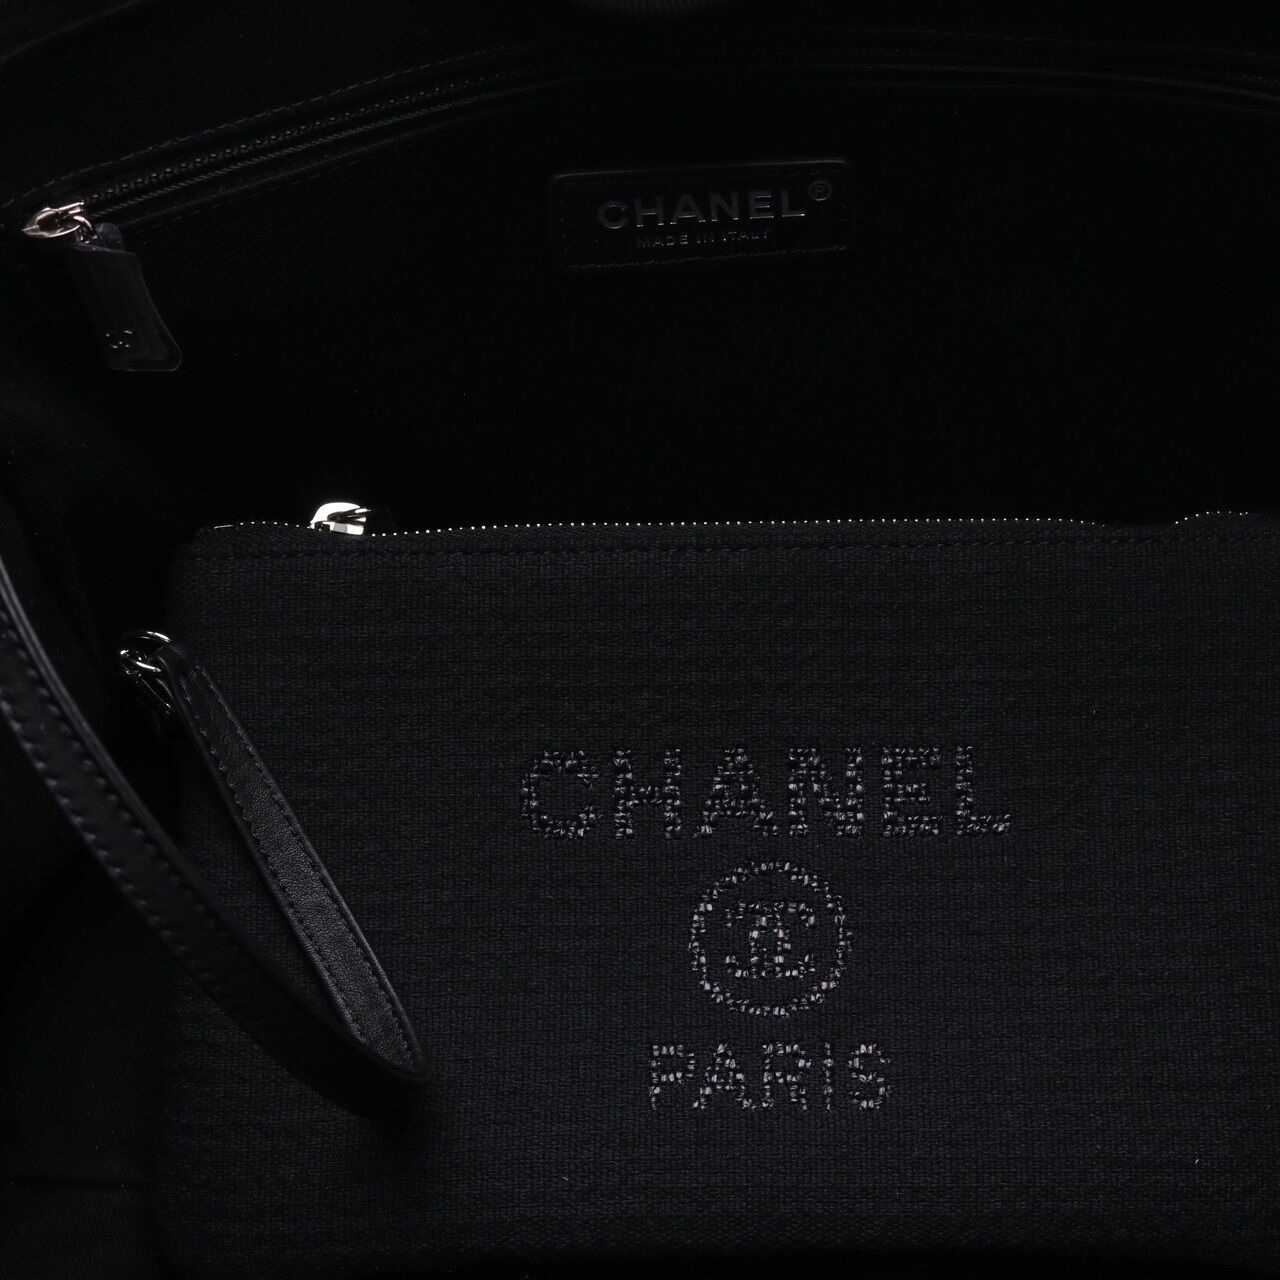 Chanel Deauville Rue Cambon Black Tote Bag